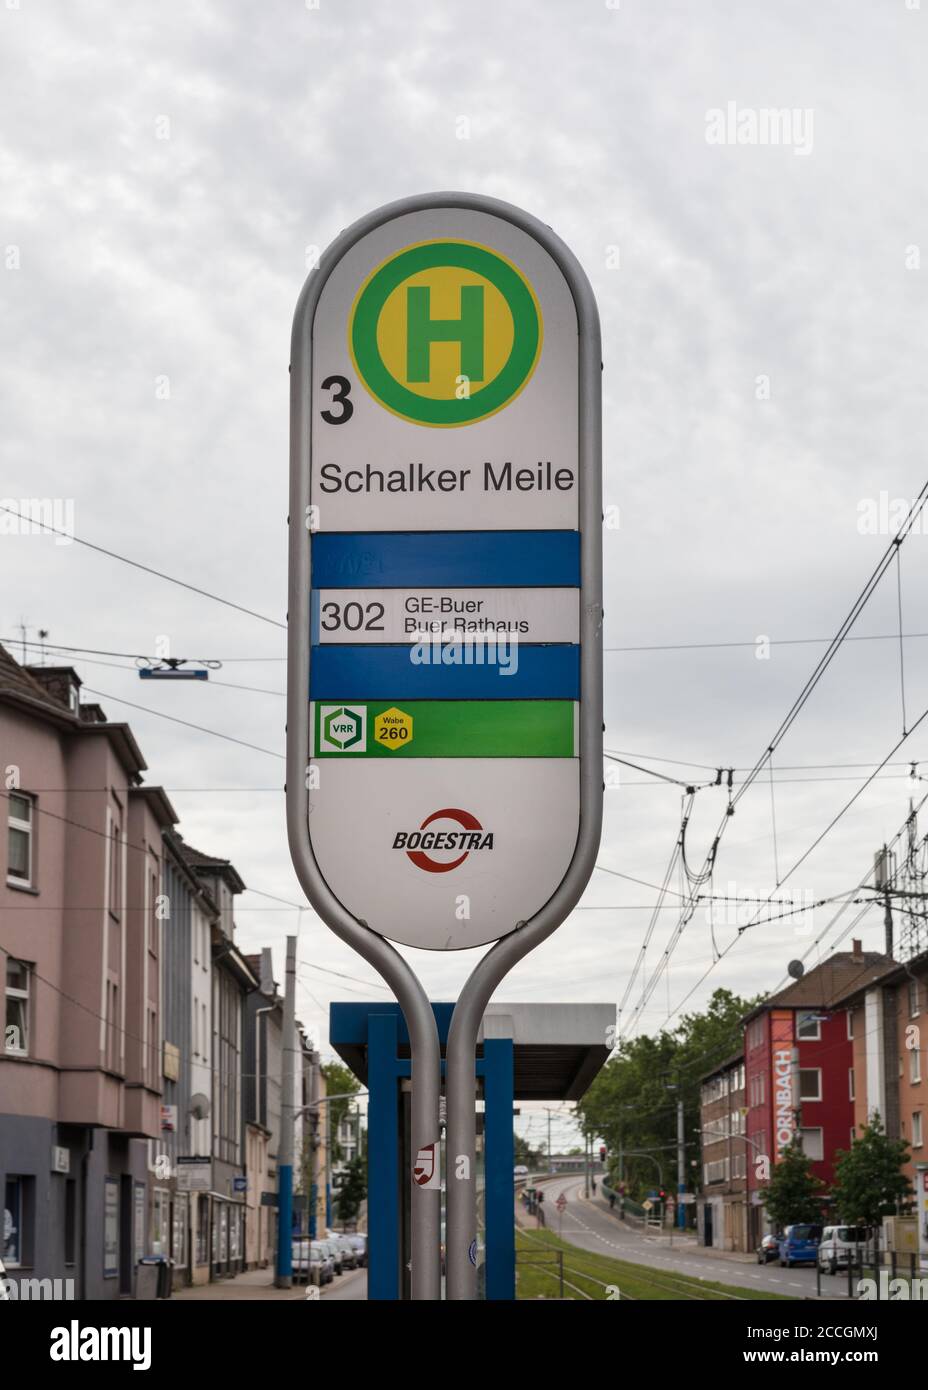 Straßenbahnhaltestelle Schalker Meile, Fanbereich des FC Schalke 04, in Gelsenkirchen, Nordrhein-Westfalen, Deutschland Stockfoto